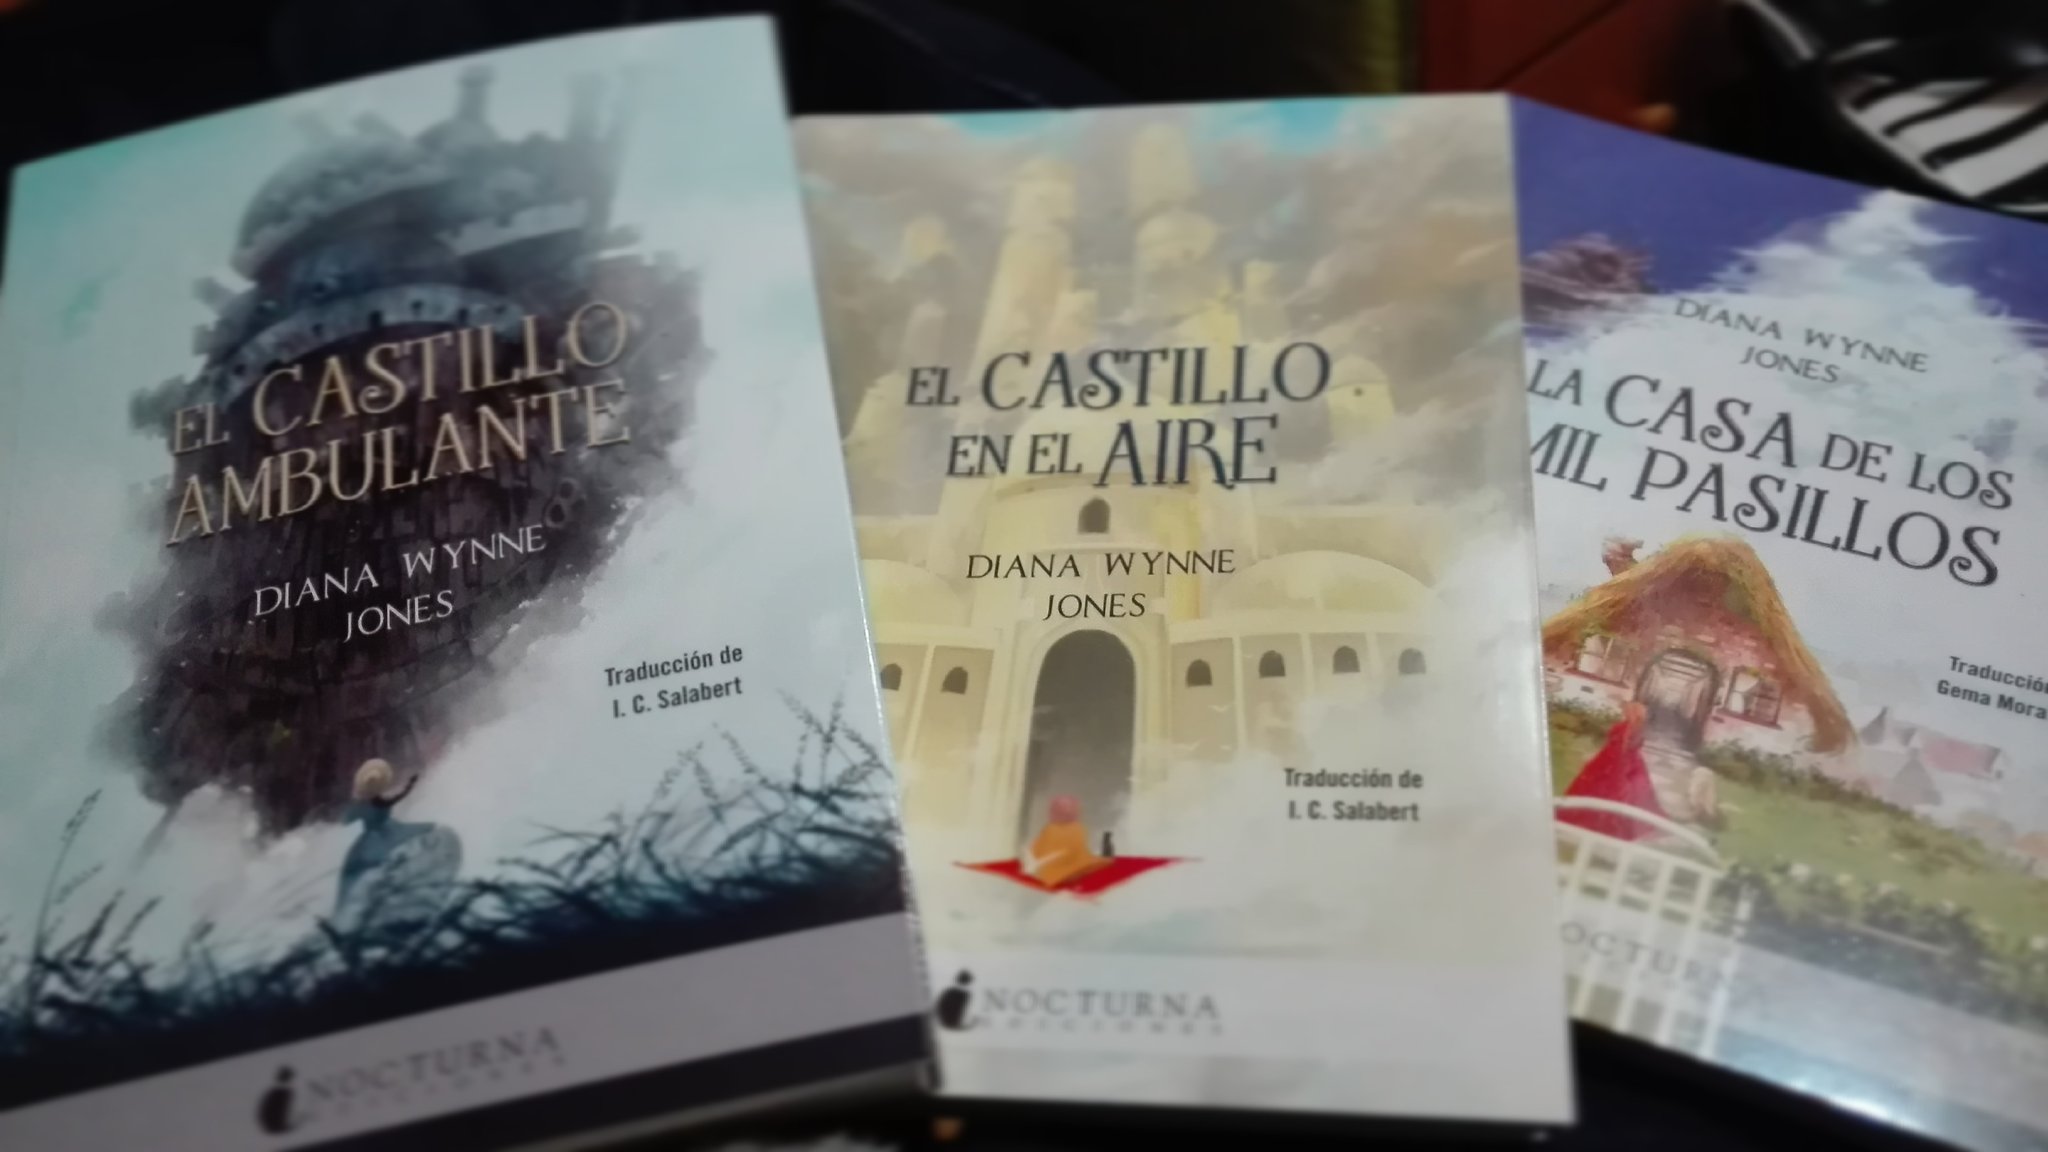 Generación GHIBLI on X: Ya ha salido a la venta la nueva edición de los  tres libros de la saga 'El castillo ambulante', de Diana Wynne Jones,  editados por @NocturnaEd. En el